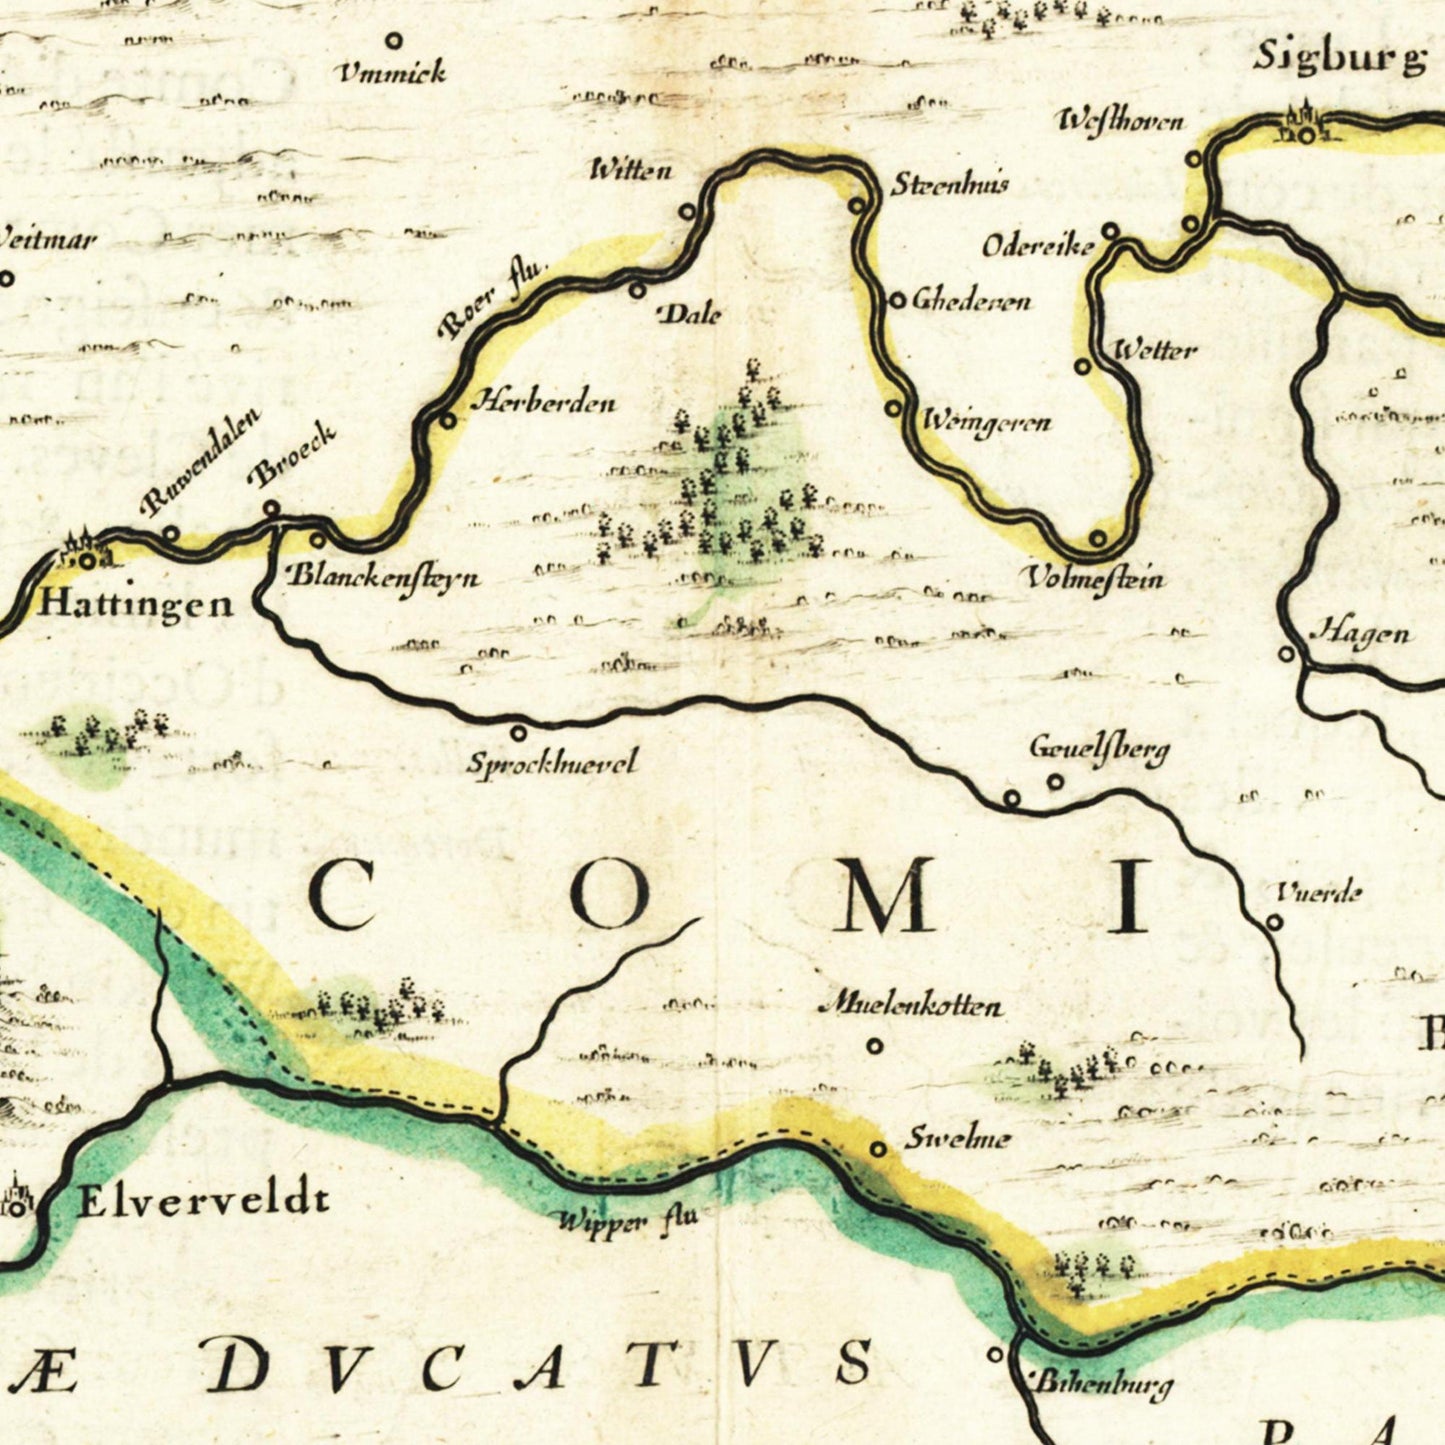 Historische Landkarte Ravensburg um 1647